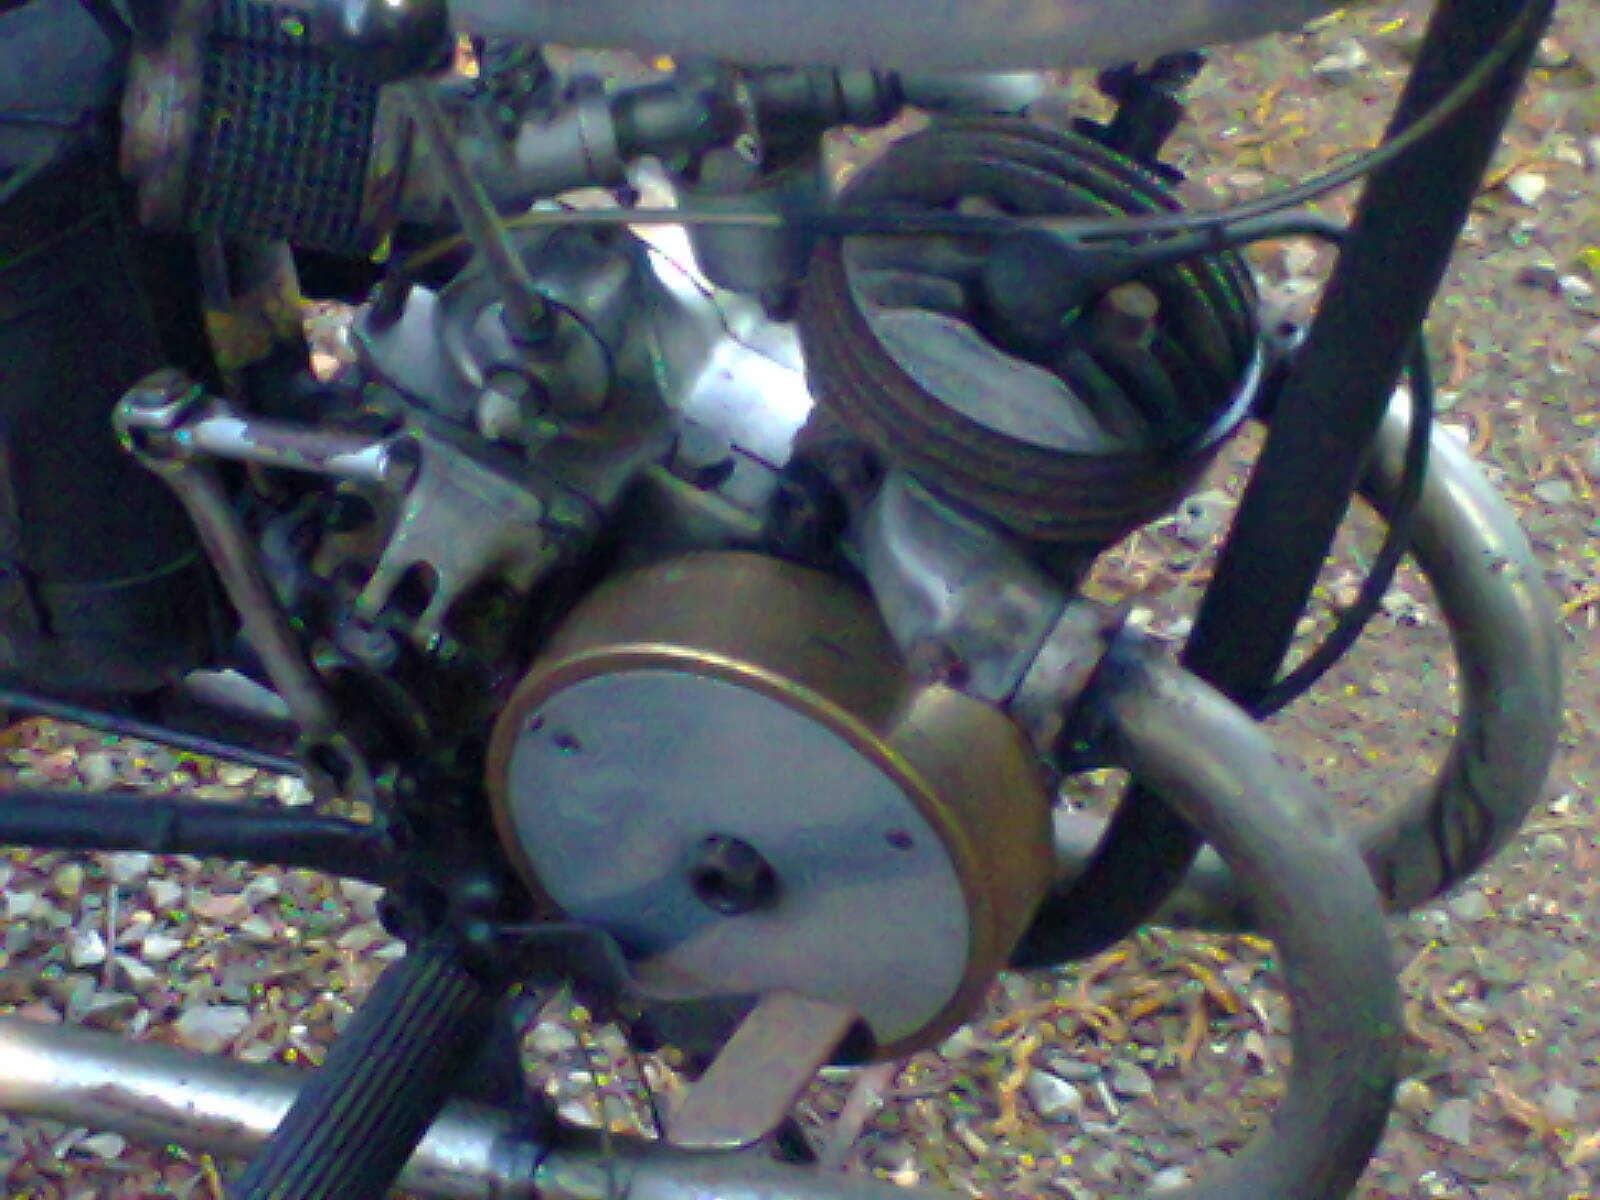 Villiers engine serial numbers